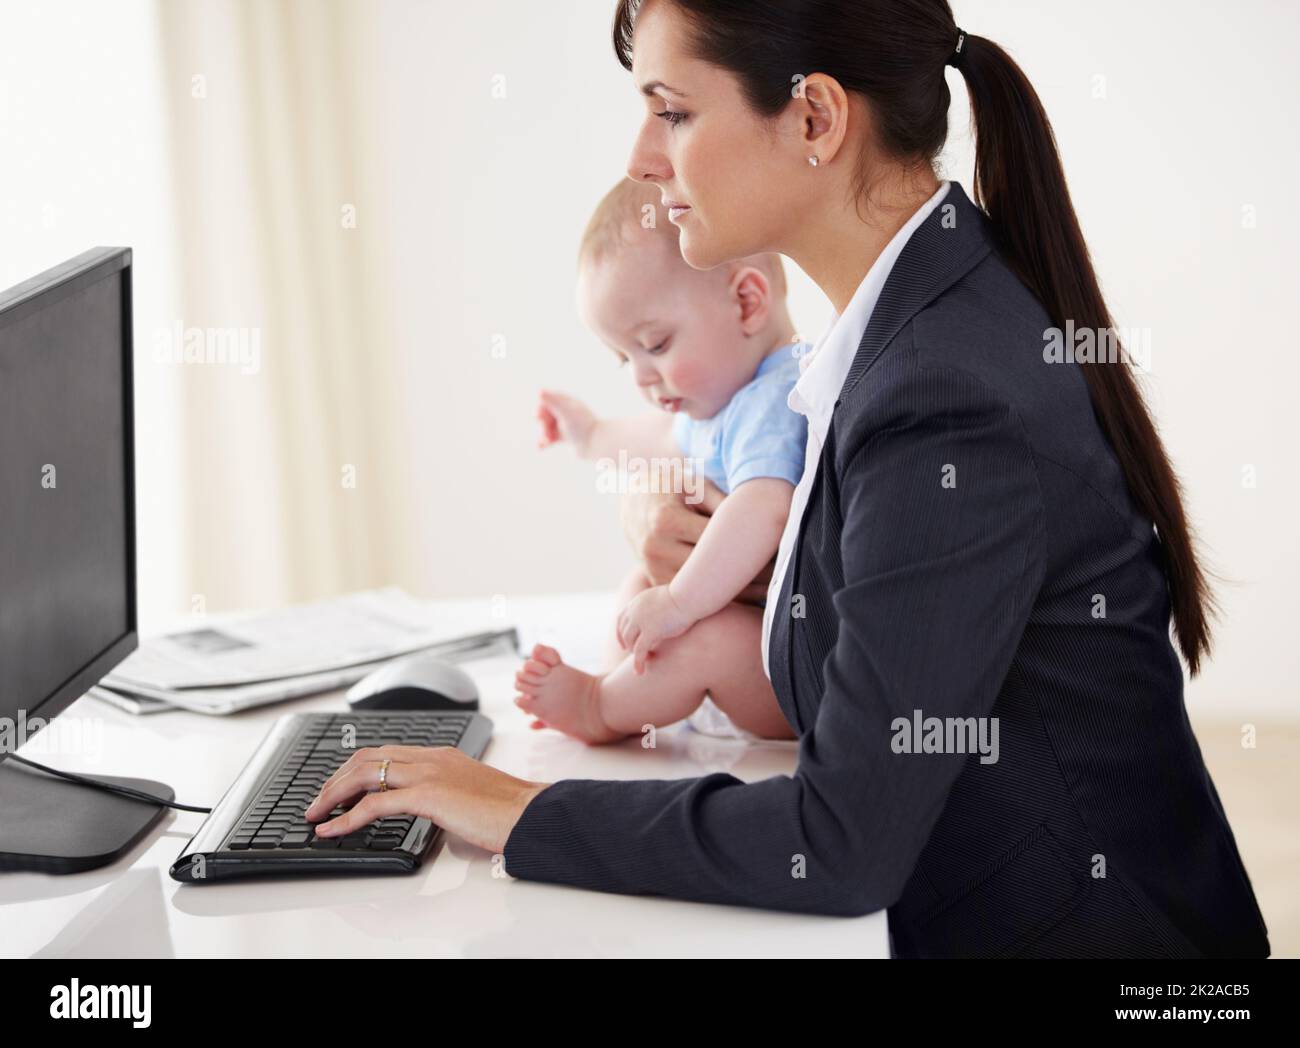 Mummys a eu un travail à faire Une jeune mère qui travaille tient un bébé tout en travaillant sur son ordinateur. Banque D'Images